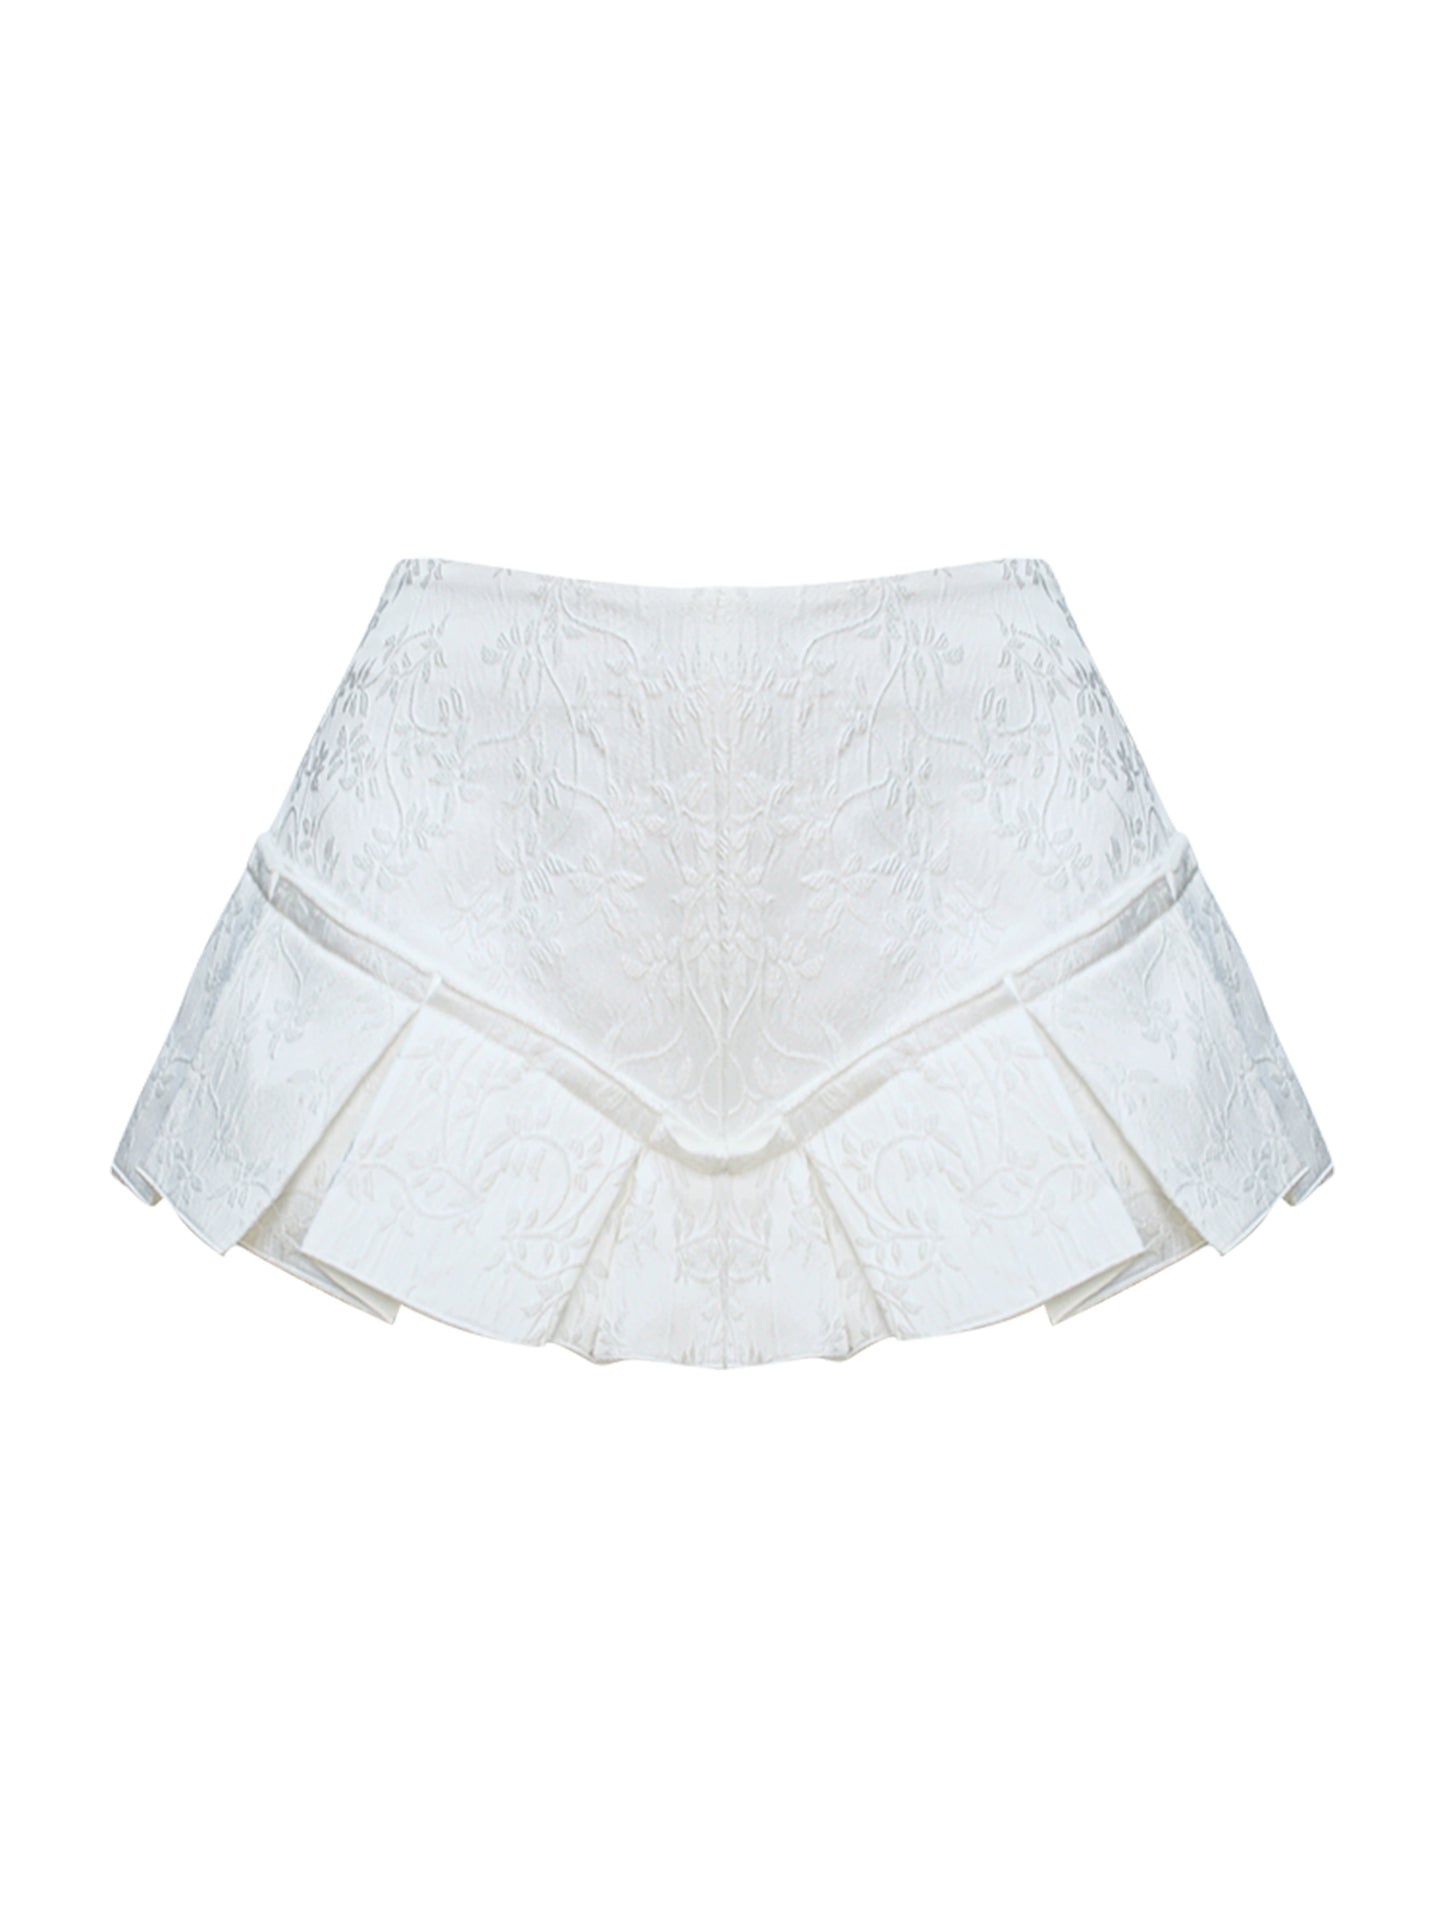 Cupid Ribbon Tops+ Short Skirt